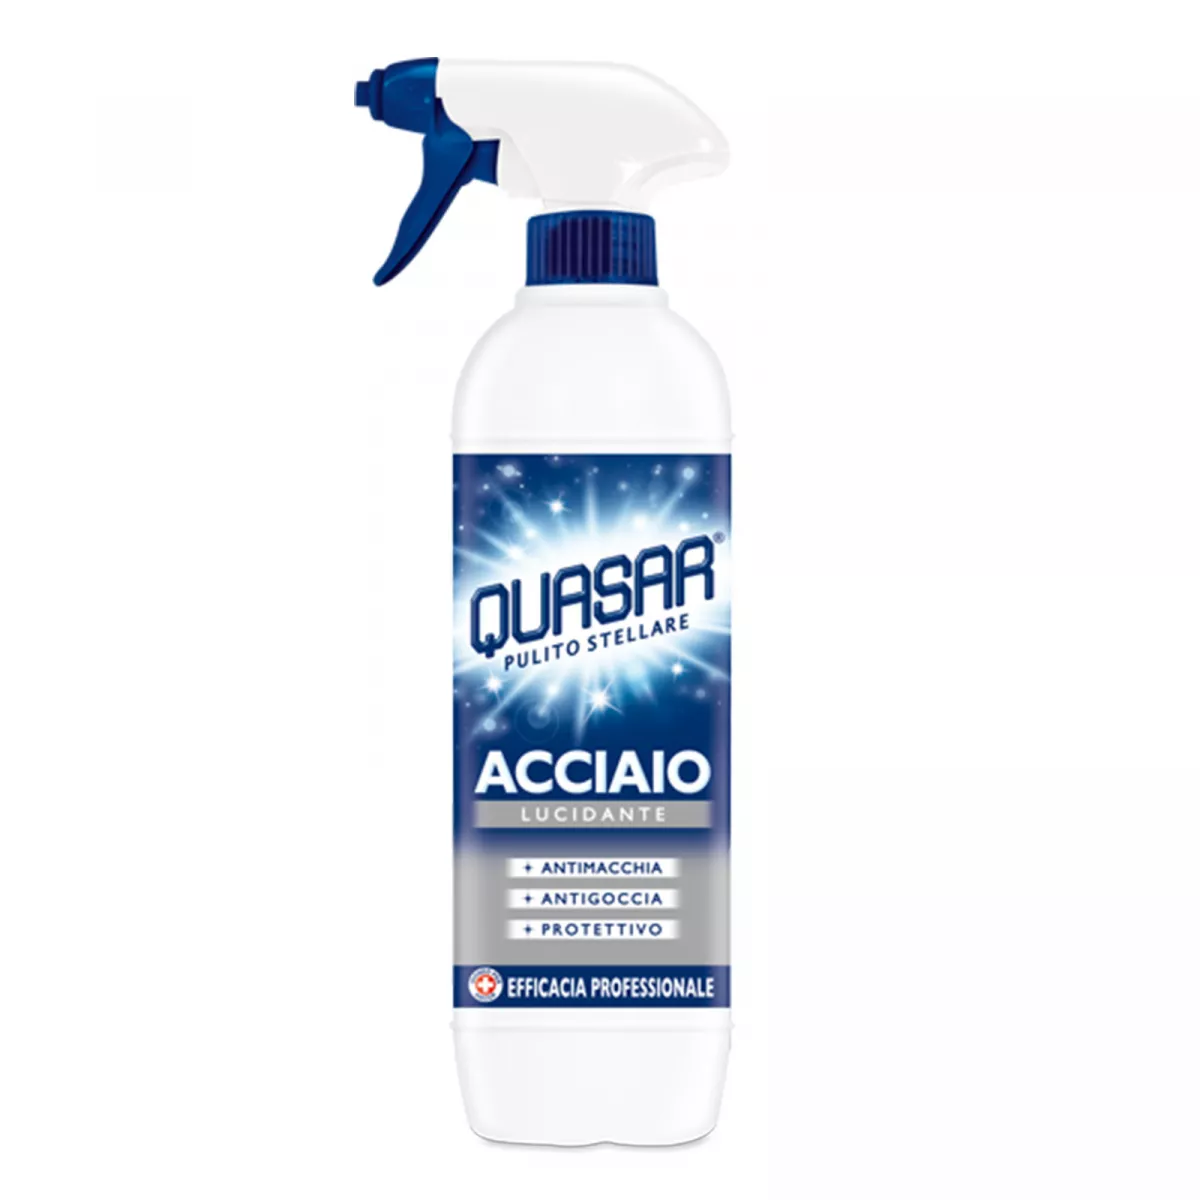 Detergent pentru Inox Quasar Acciaio